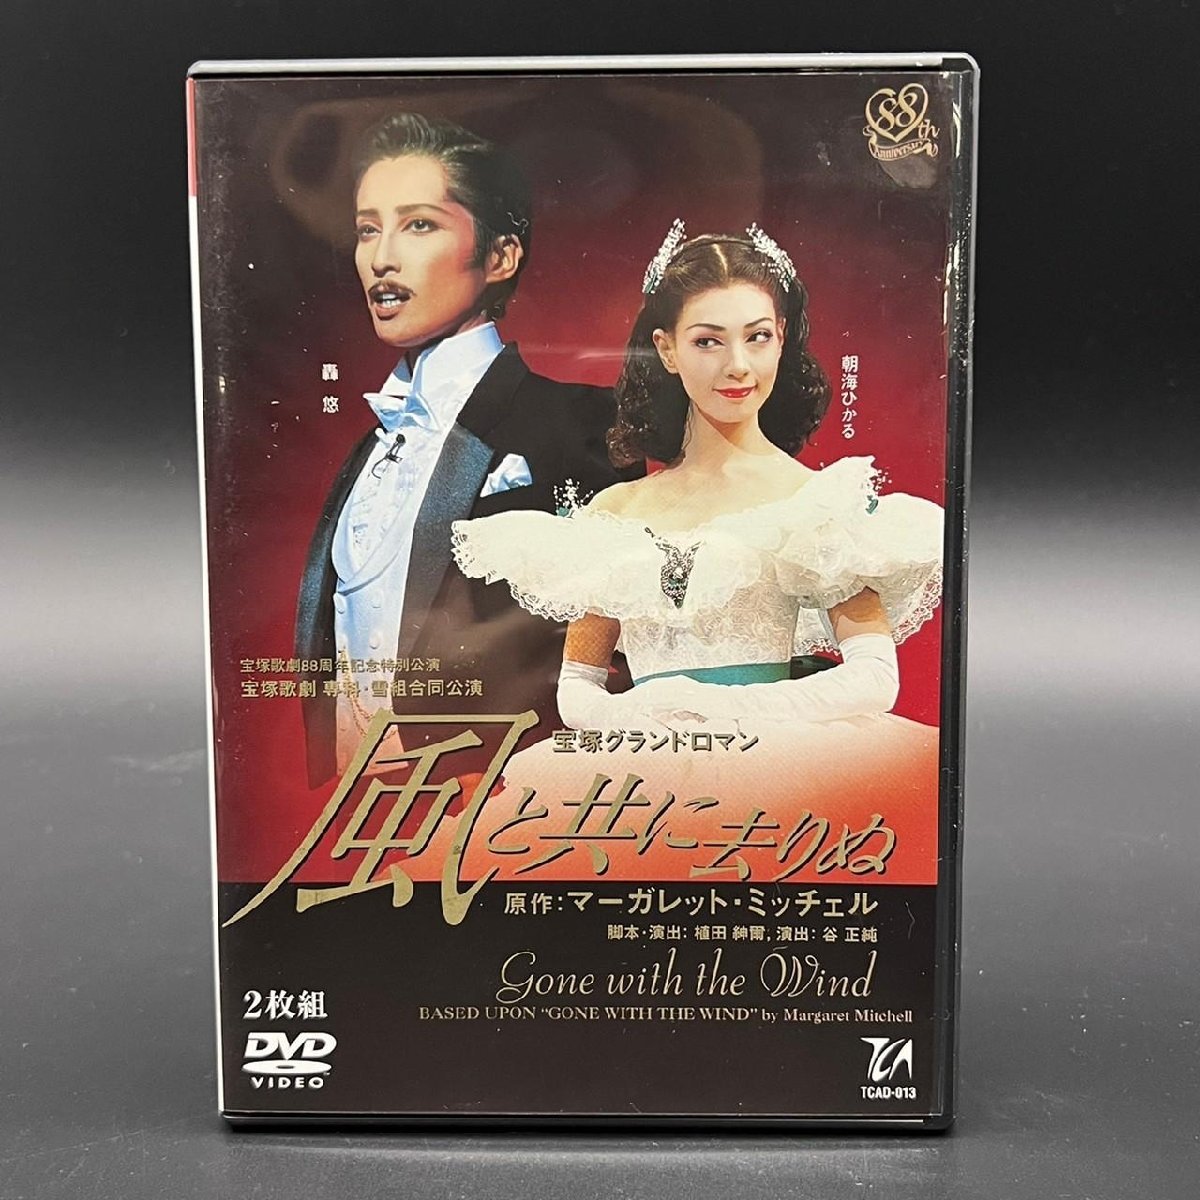 無料サンプルOK 宝塚 歌劇 ミュージカルロマン 赤と黒 安蘭けい DVD フォト 写真